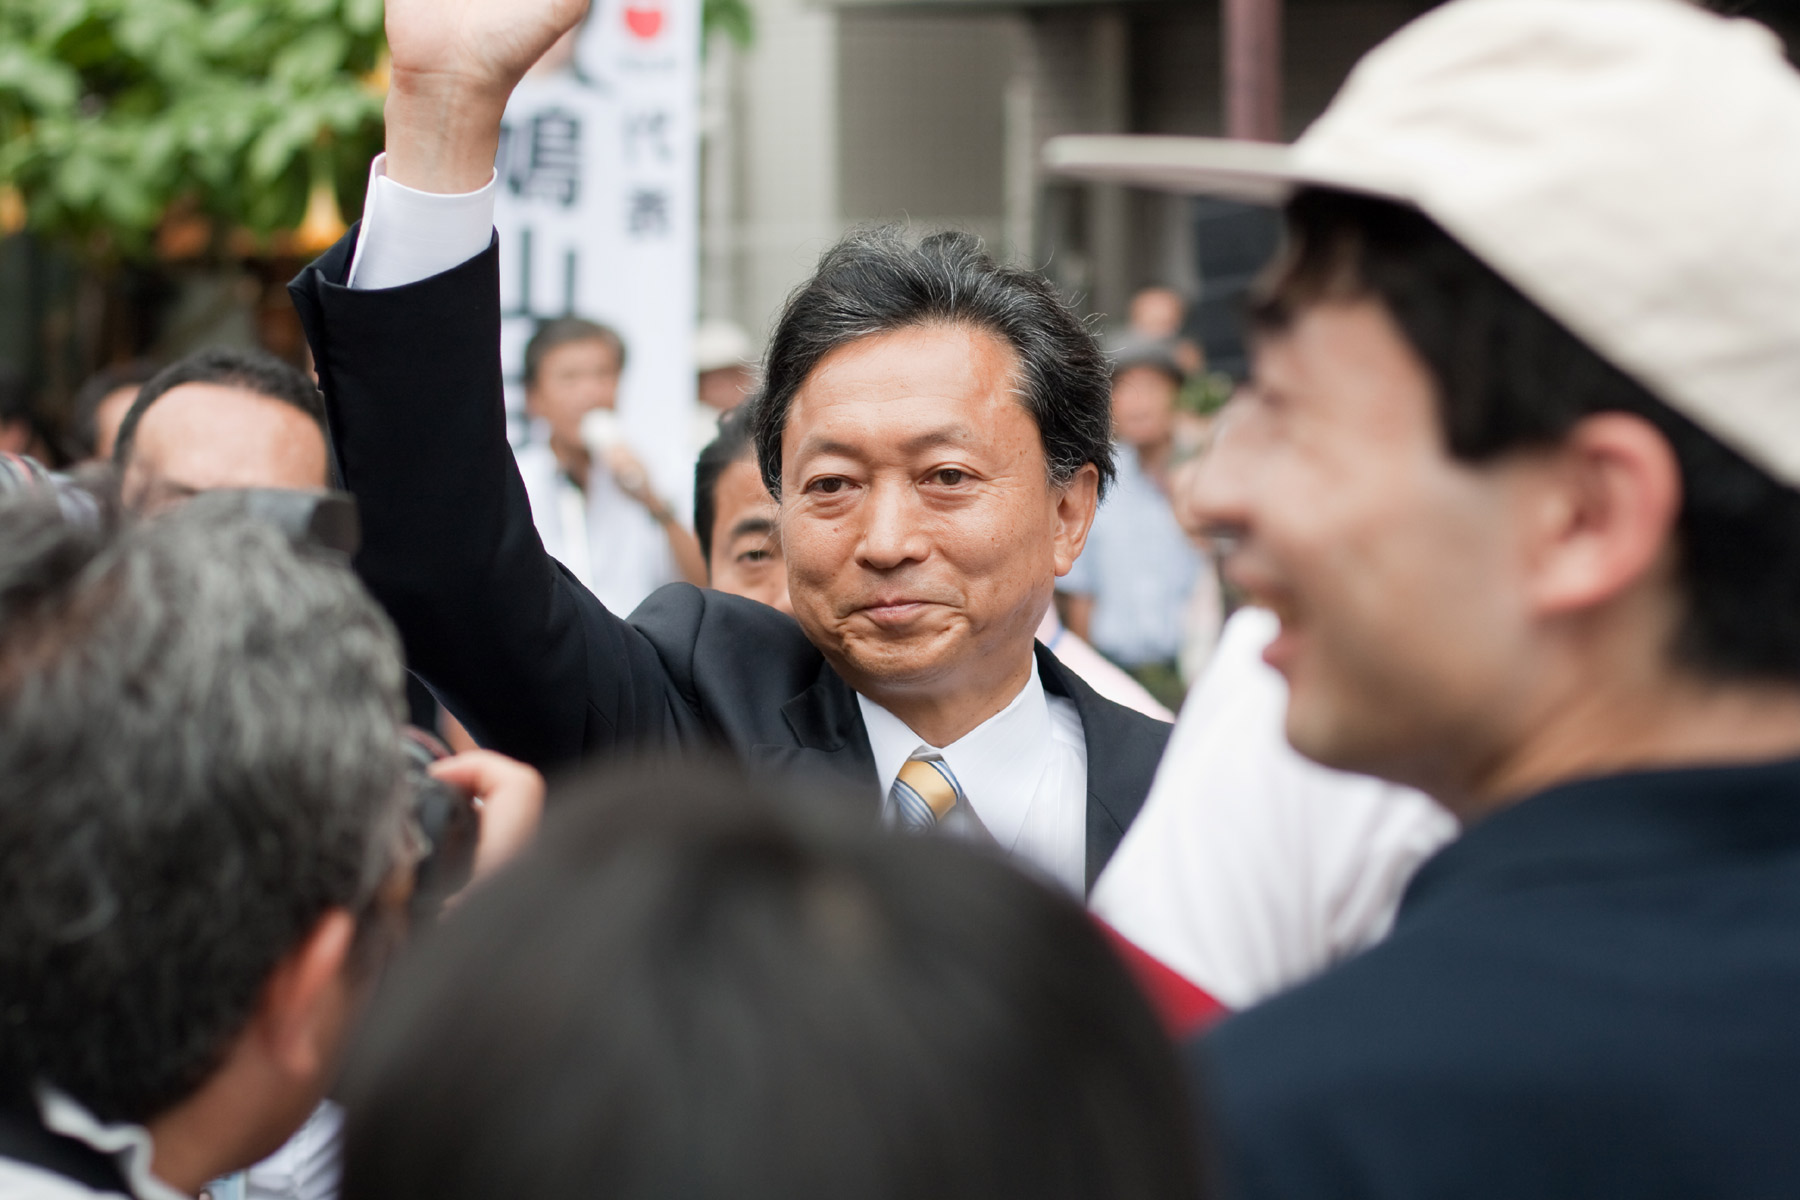 Kein Walfleischliebhaber: Mit seiner Aussage sorgt Hatoyama in Japan für Verunsicherung. Foto: David Wiltschek